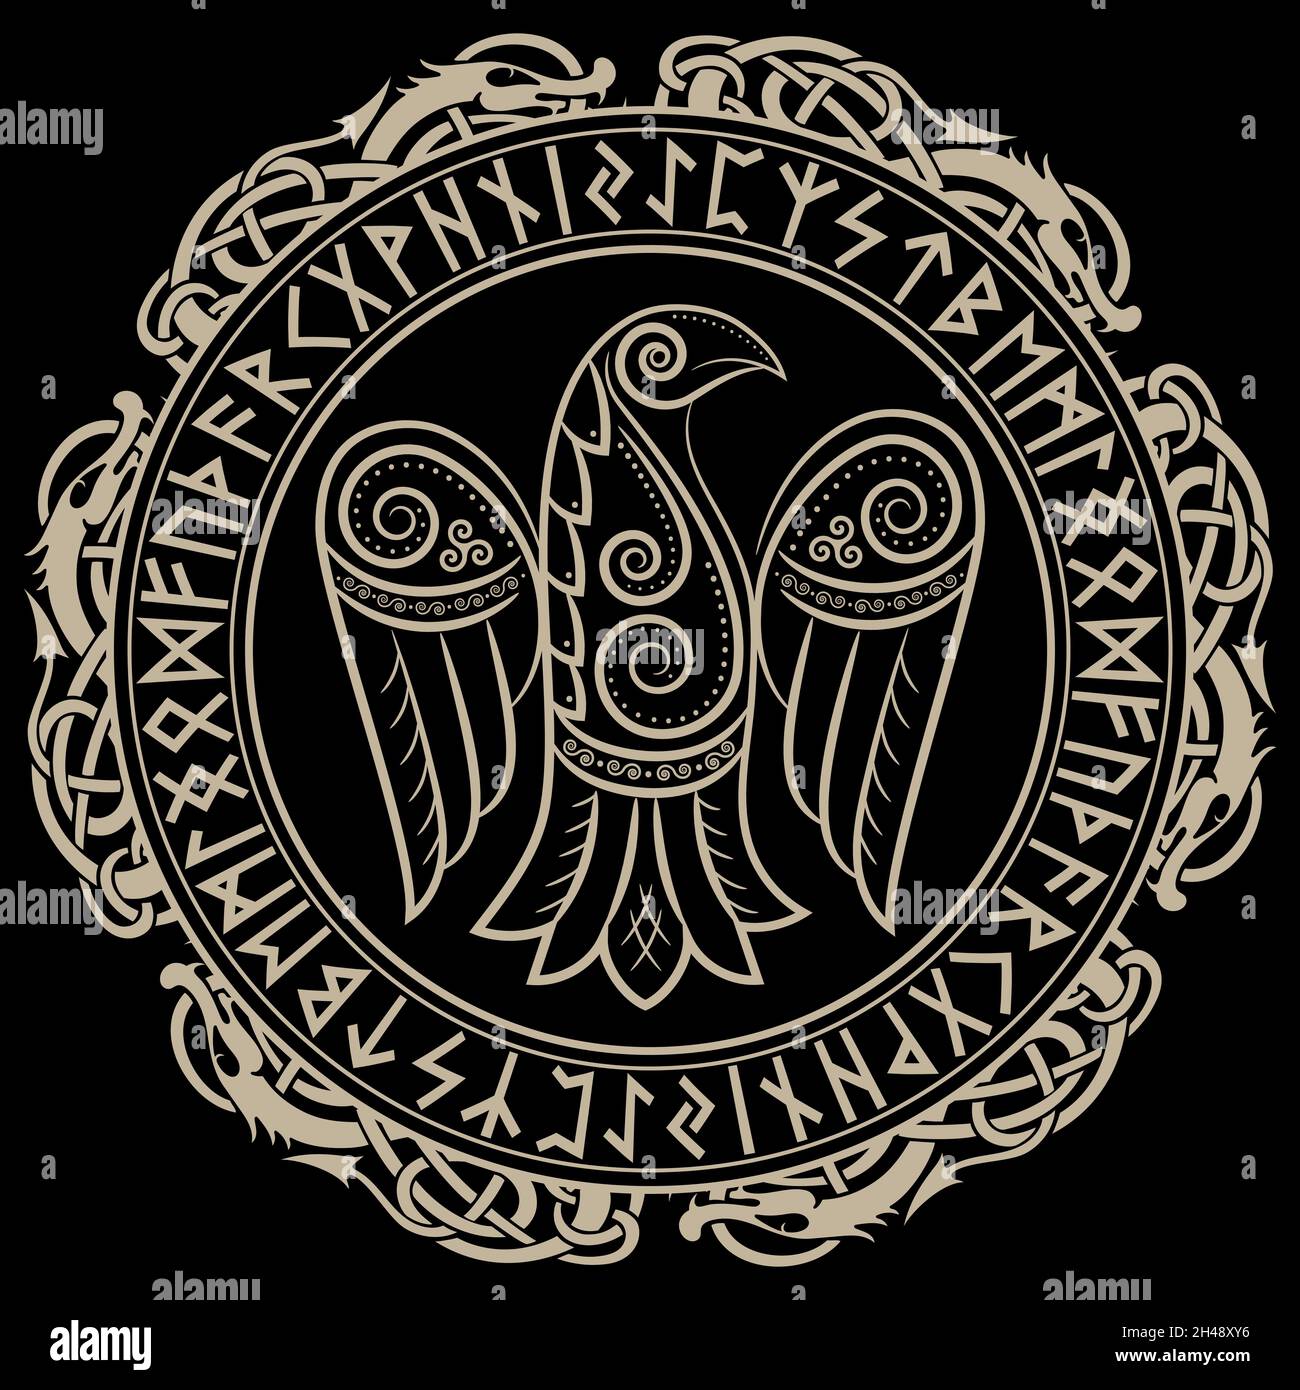 Design von Raven im keltischen, skandinavischen Stil und nordischen Runen Stock Vektor